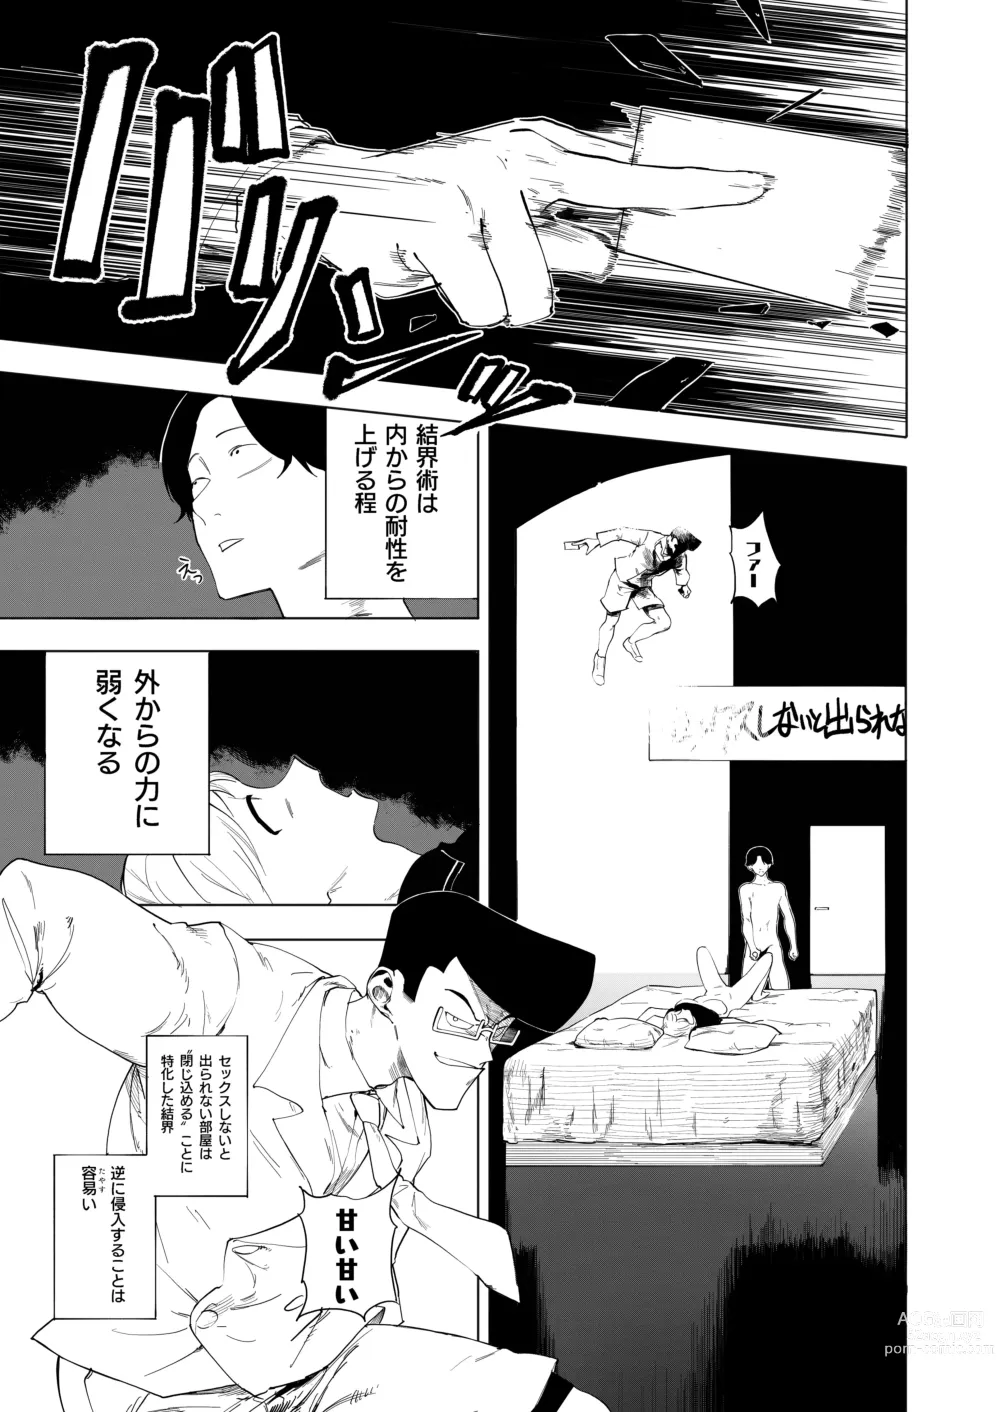 Page 105 of doujinshi Hachimiya Meguru Dosukebe Goudoushi MassachuEcchi-shuu 2 Natsu ni Koi suru Echiechi Cart